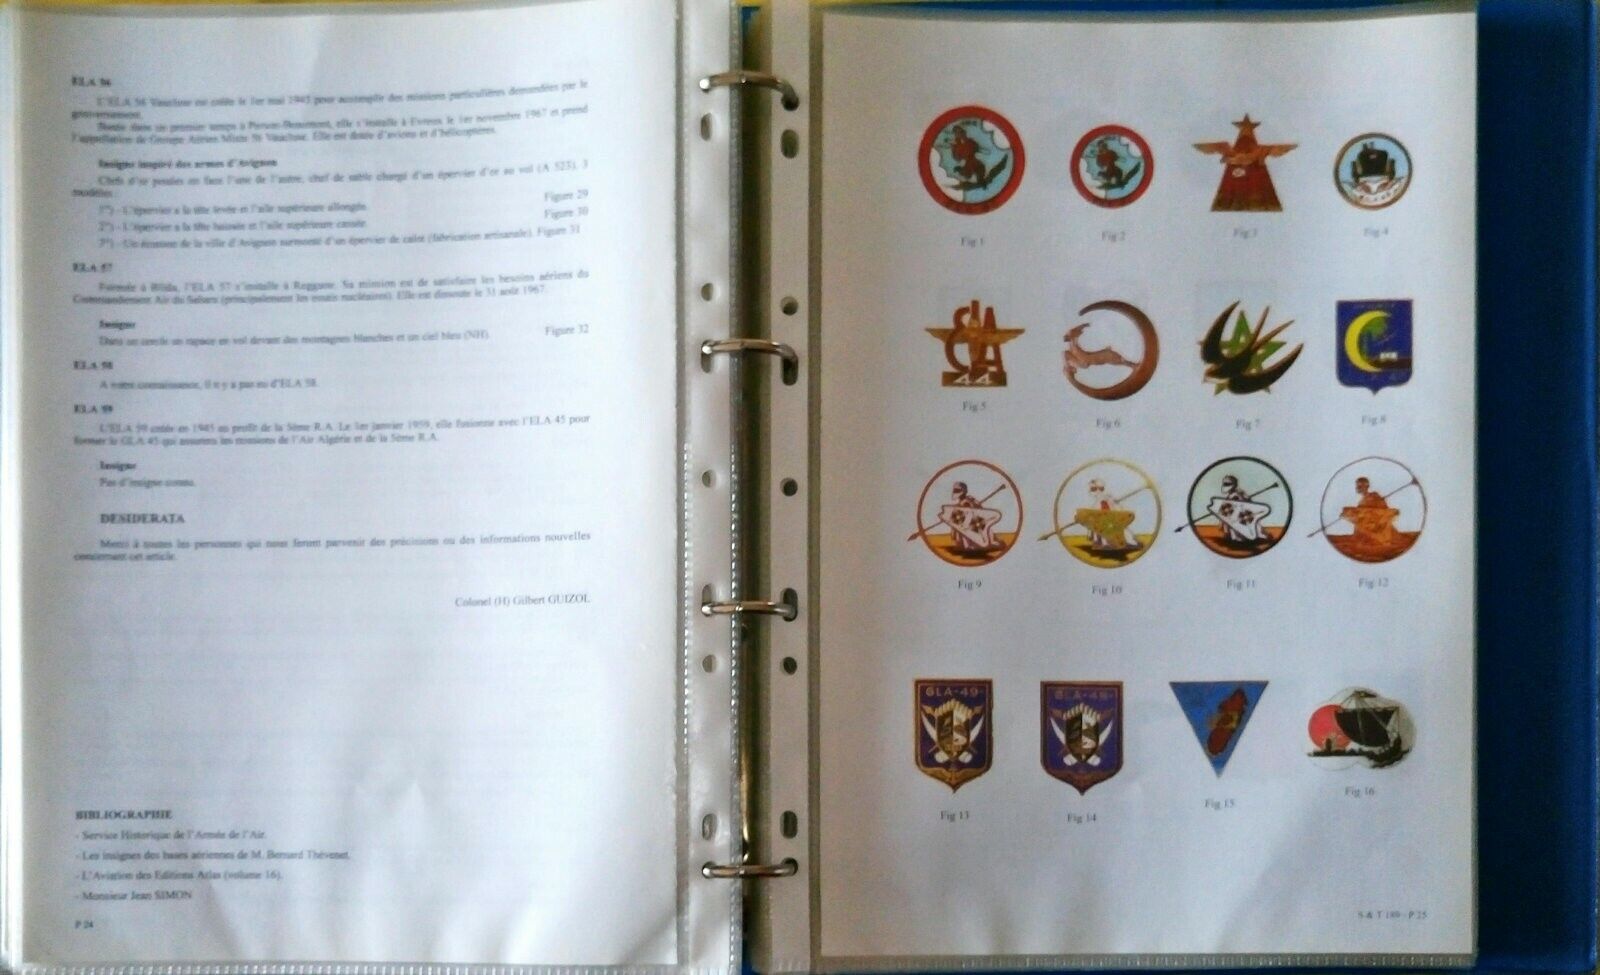 *Documentation Insignes Armée de l Air  2 - 46 documents pour au total 195 pages